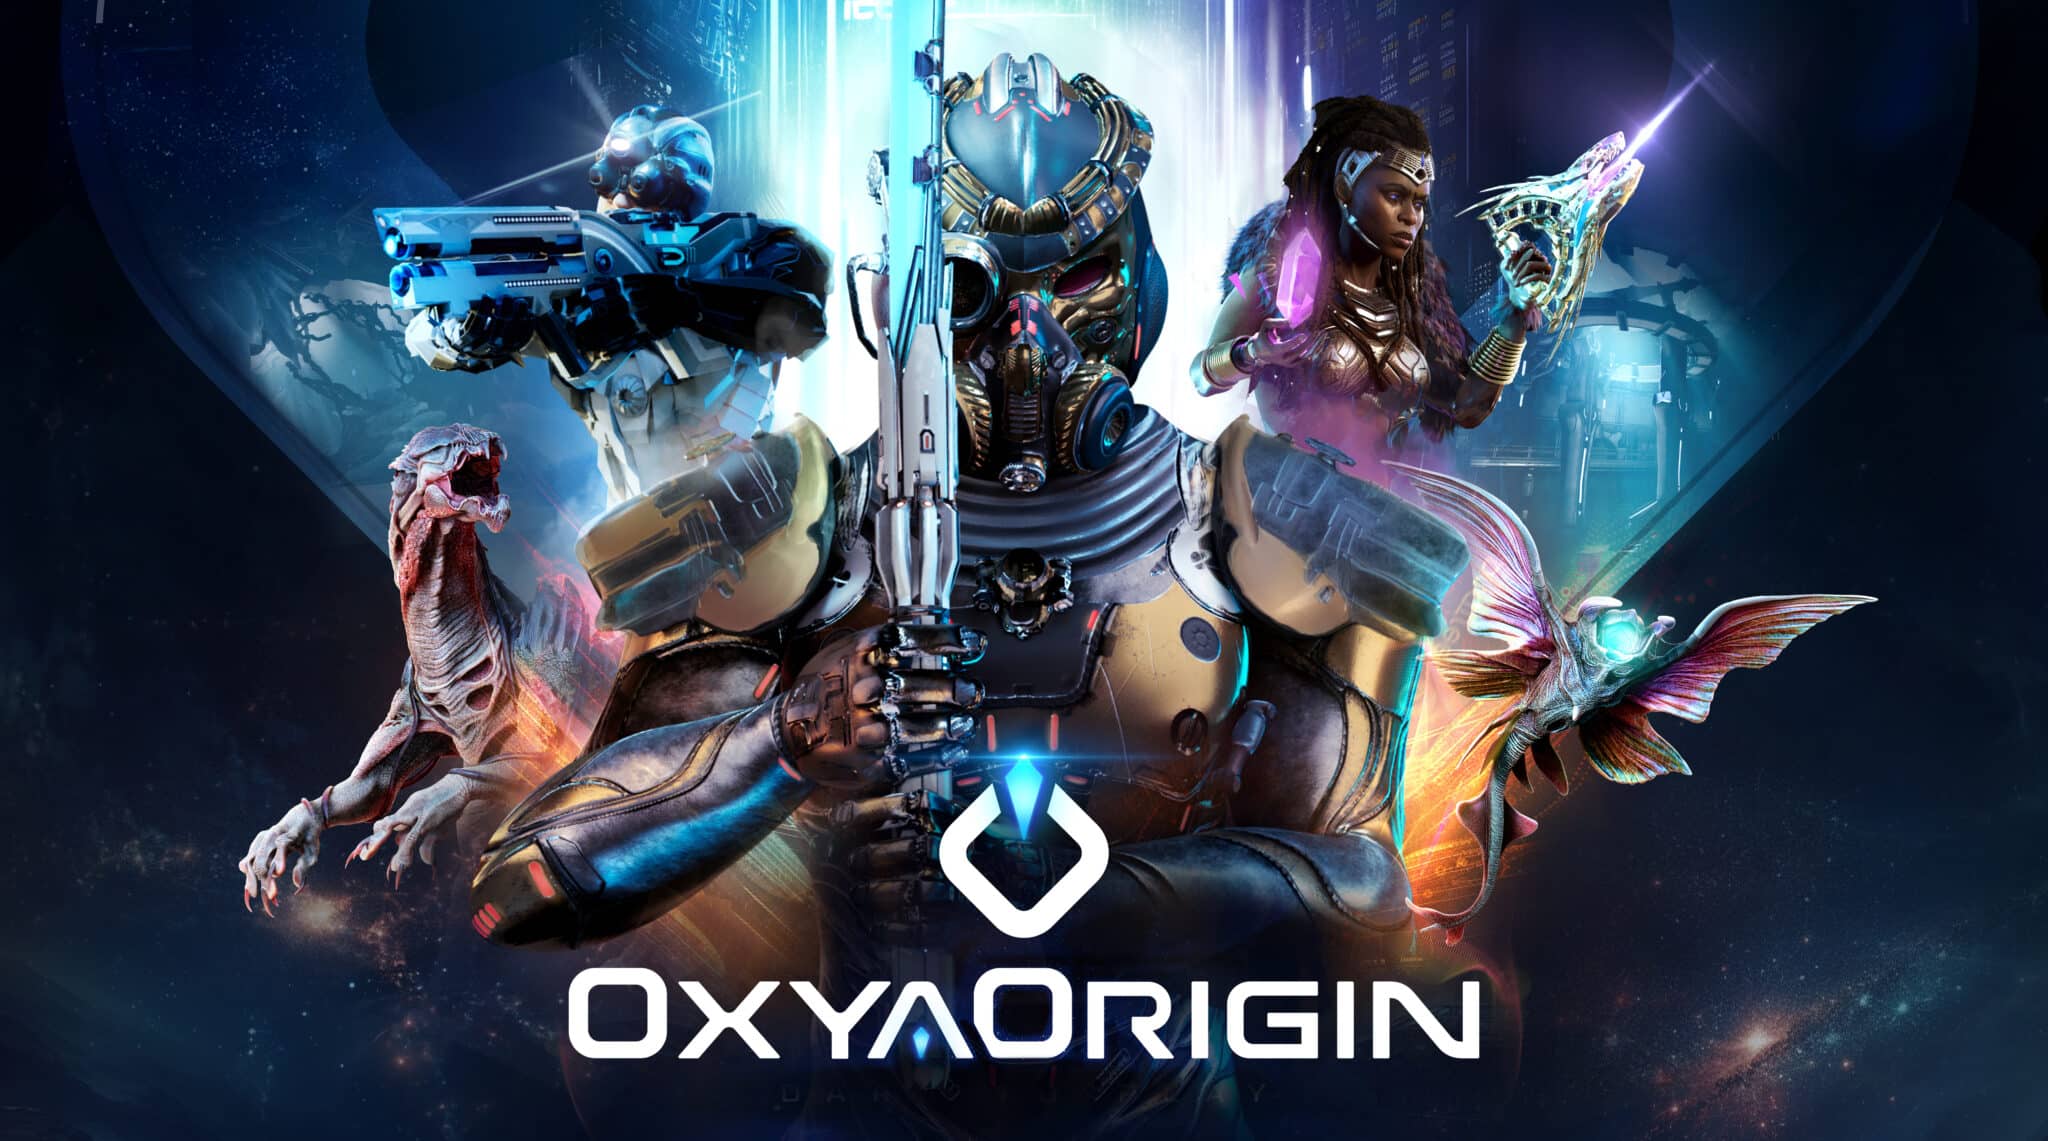 affiche d'oxya origin - Source : Oxya Origin